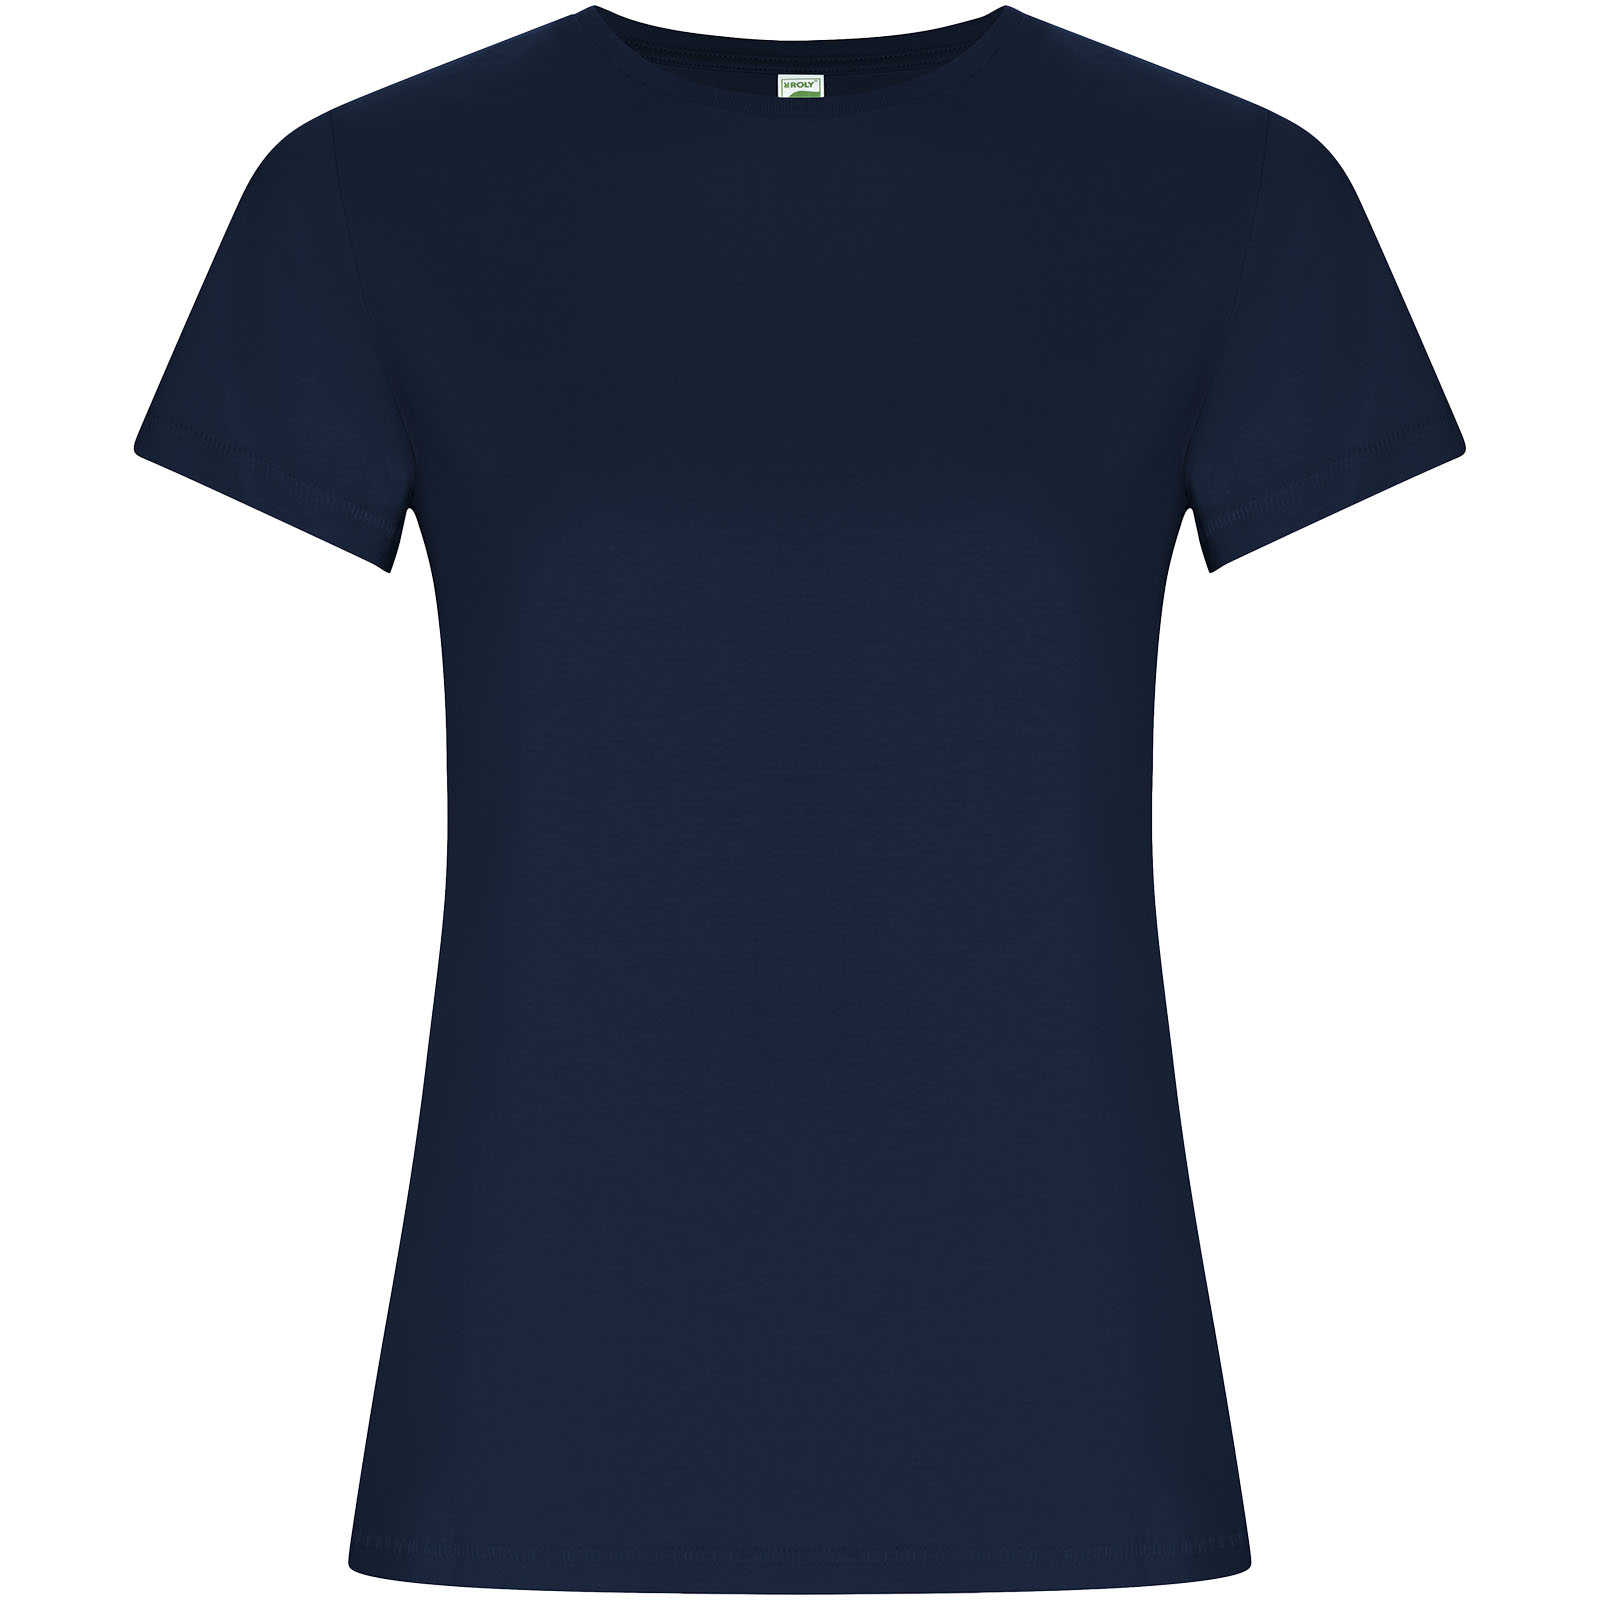 Clothing - Golden short sleeve women's t-shirt